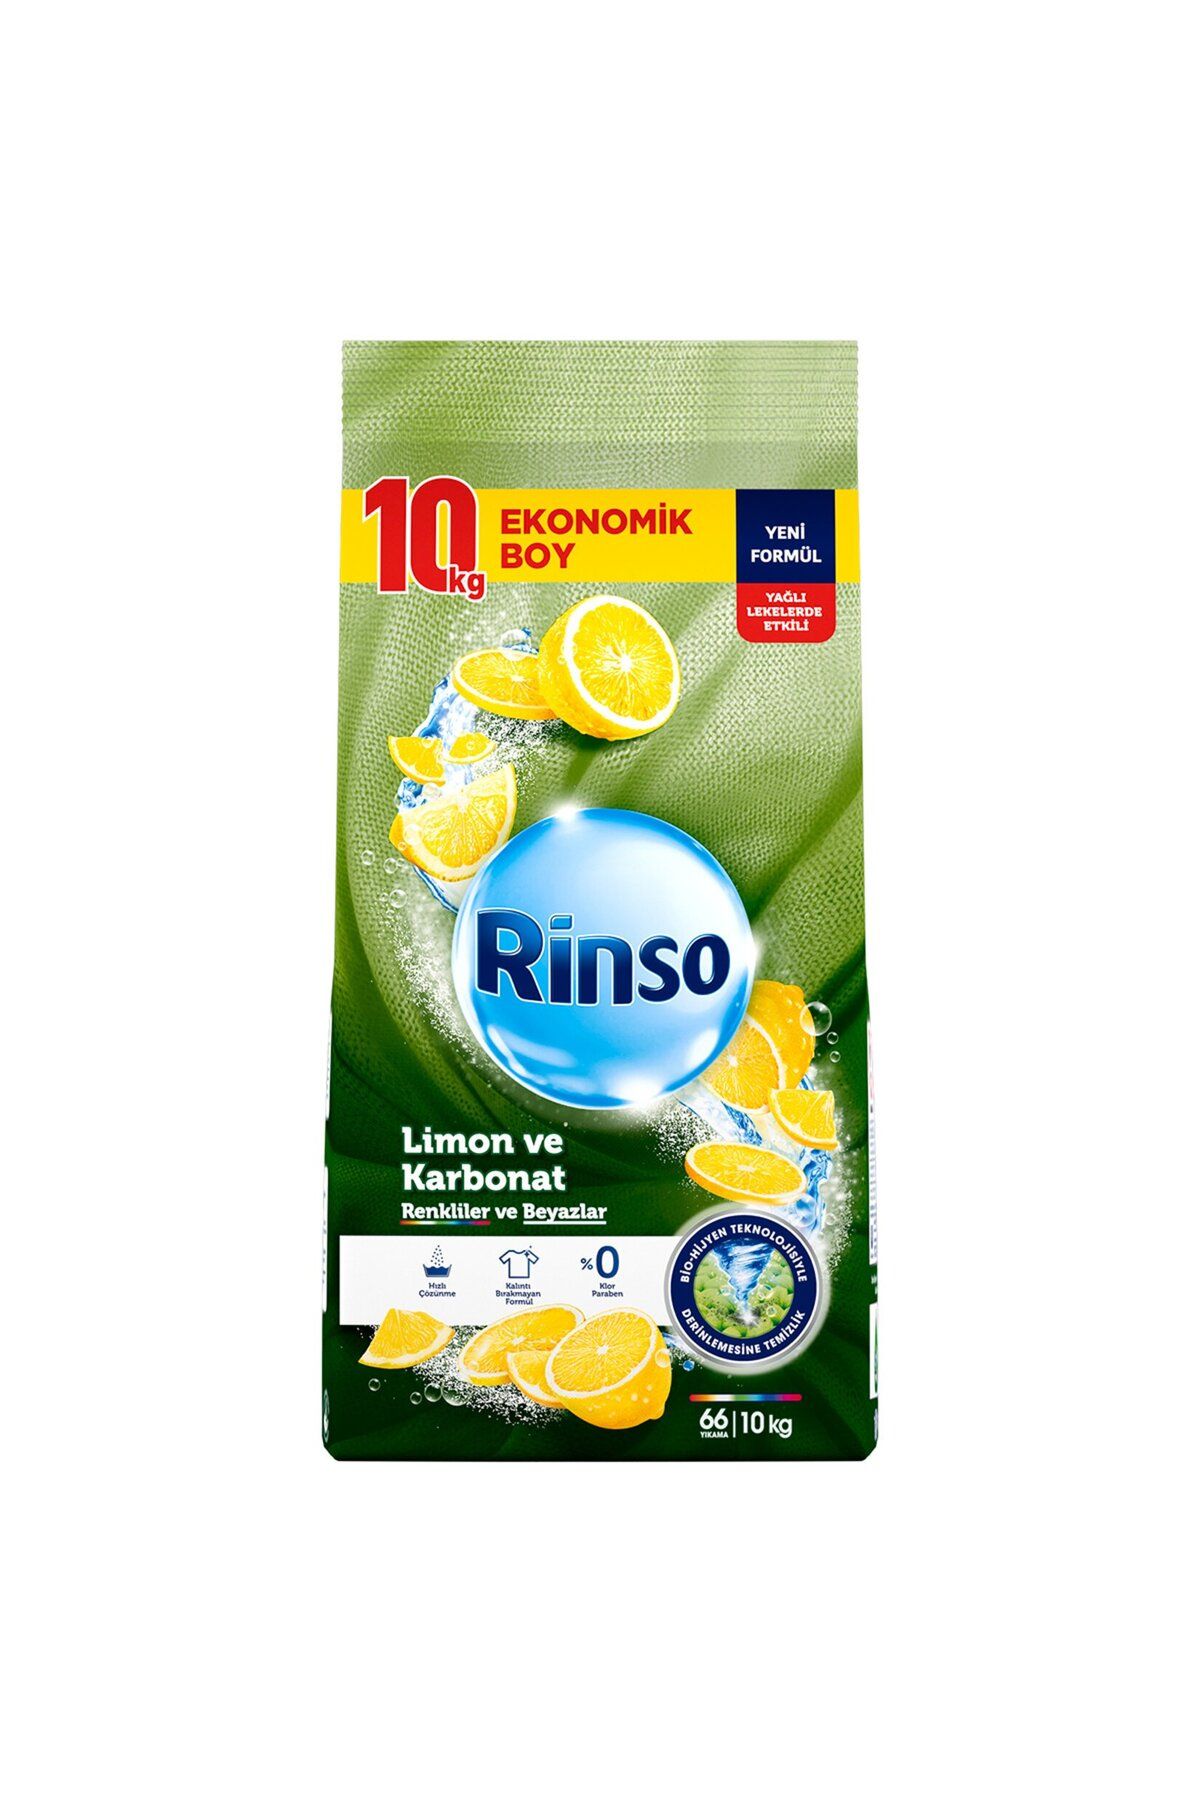 Rinso Toz Çamaşır Deterjanı Limon Ve Karbonat Renkliler Ve Beyazlar Için Derinlemesine Temizlik 10 K